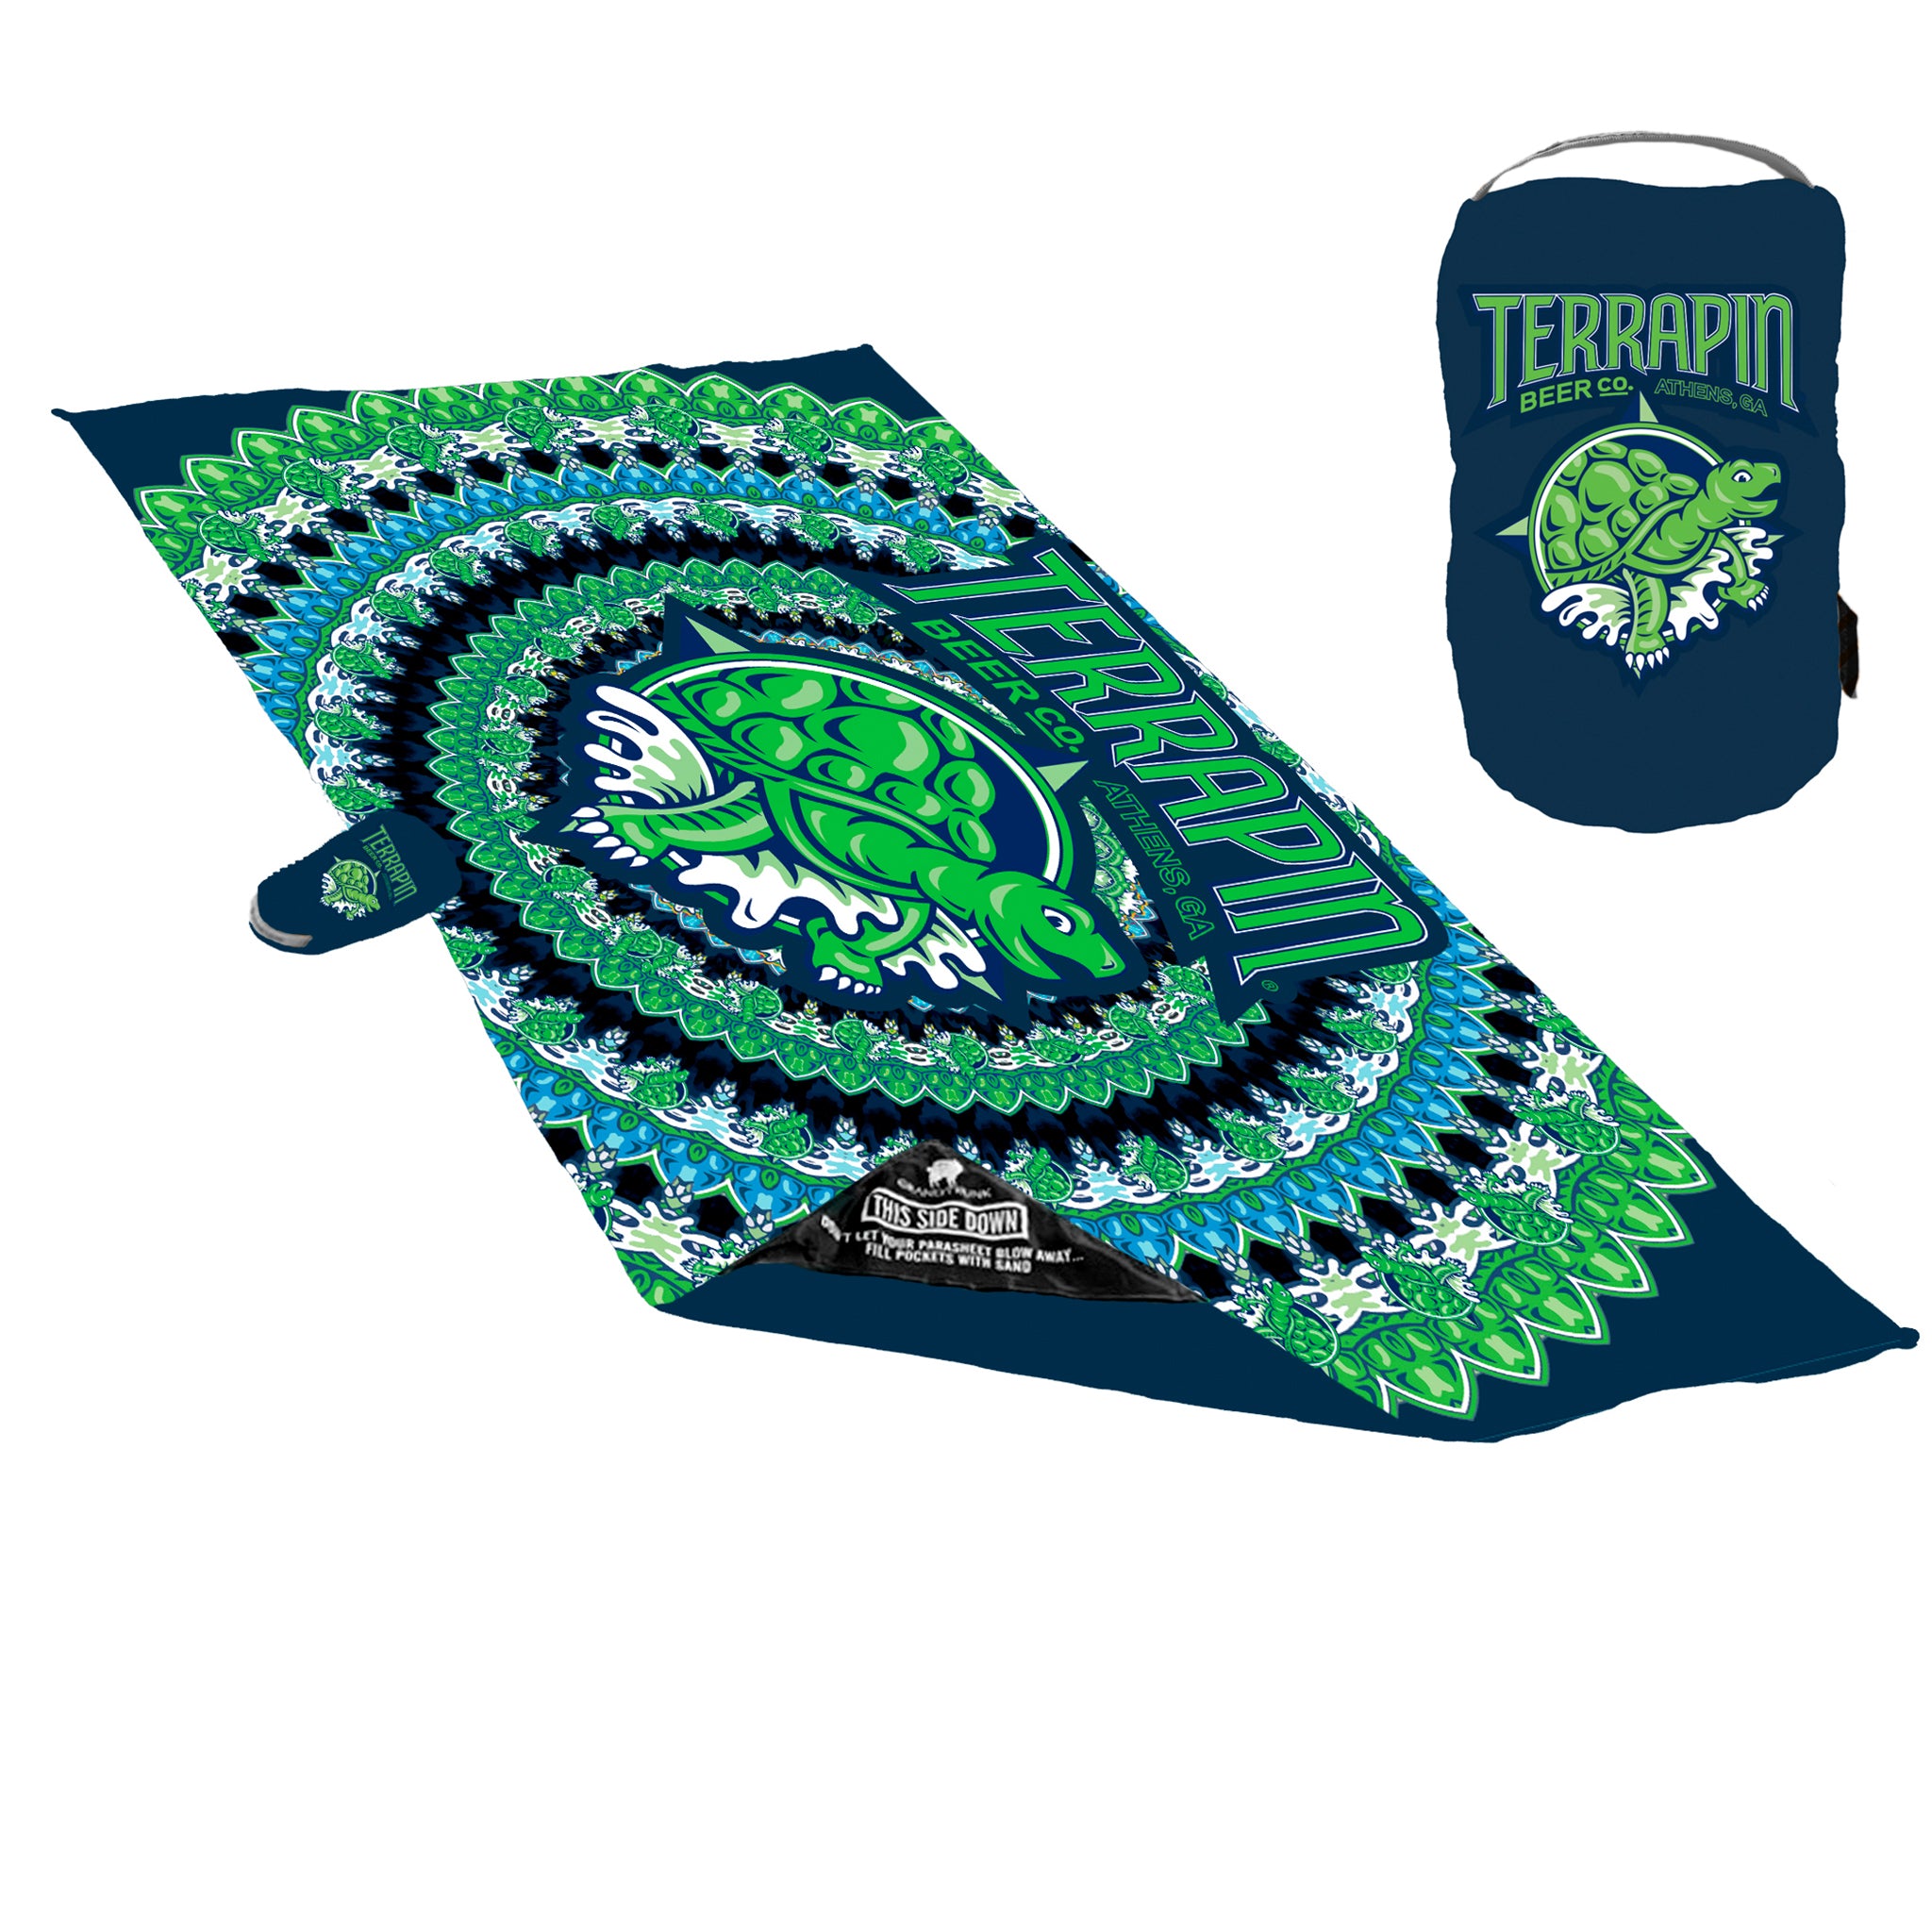 Hats – Terrapin Beer Co.